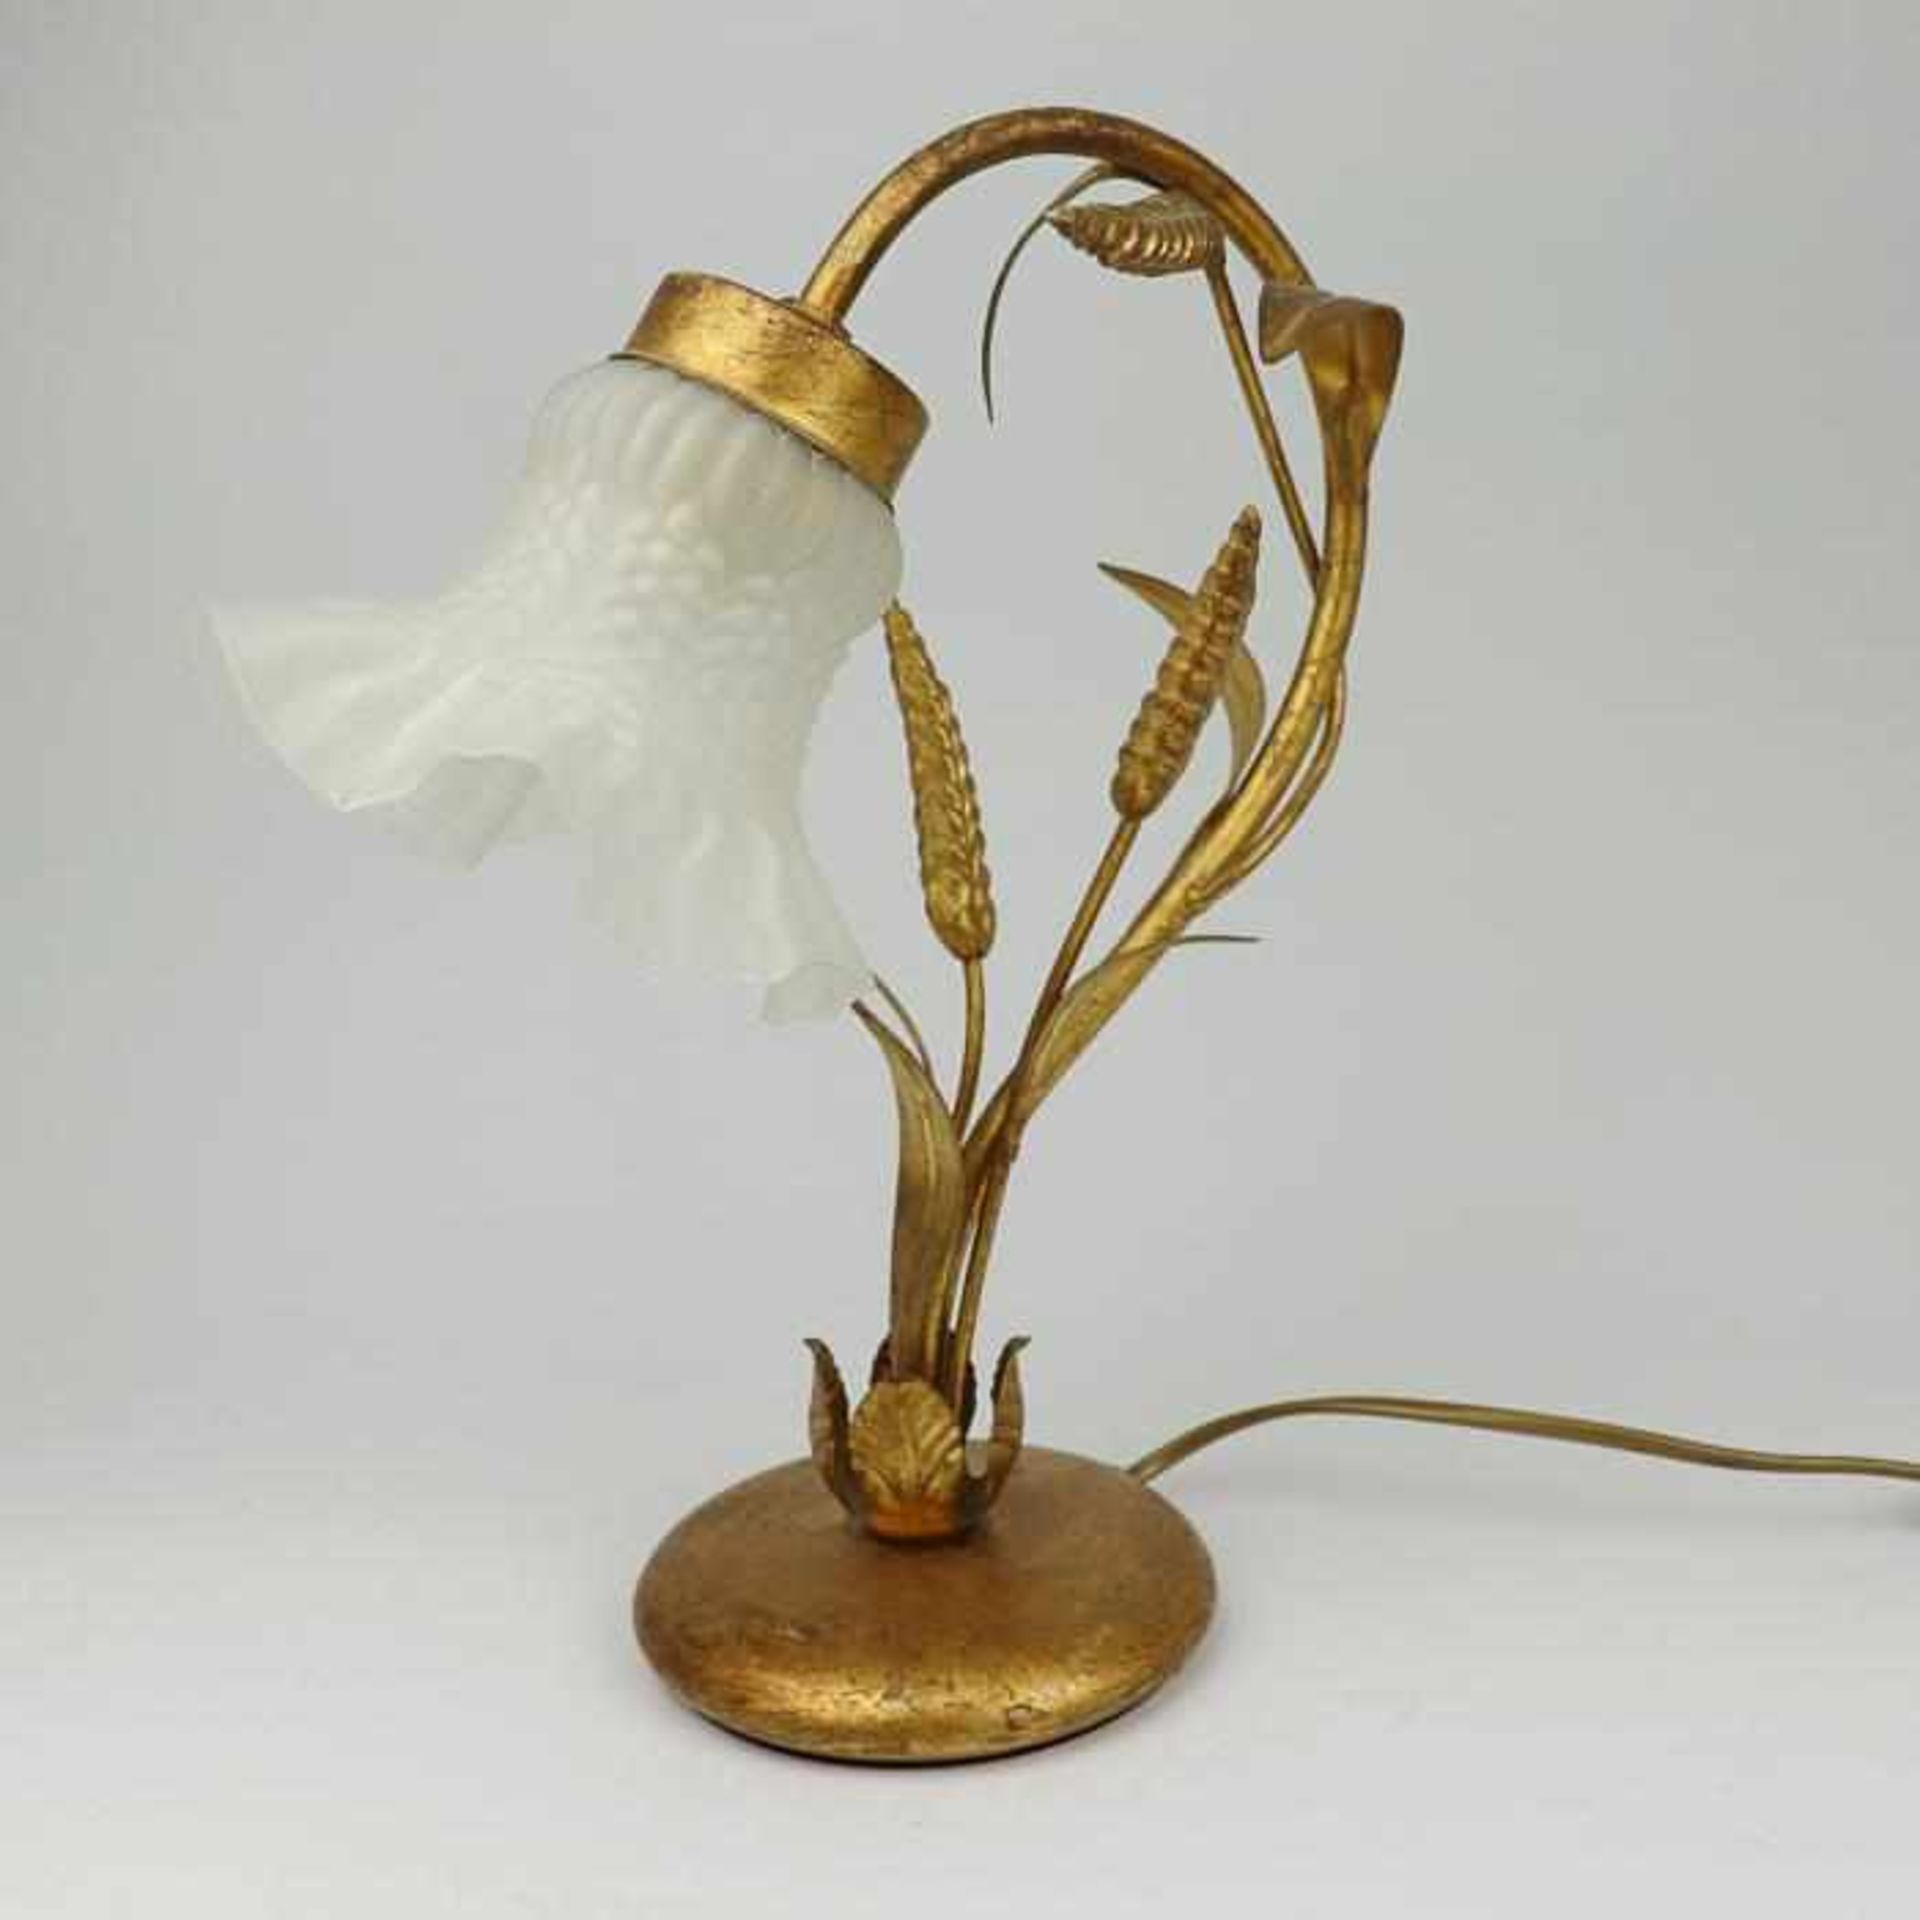 Tischlampe1950er J., goldfarbenes Metall/Glas, Rundfuß, geschwungener Arm m. vollplastischen - Bild 2 aus 4